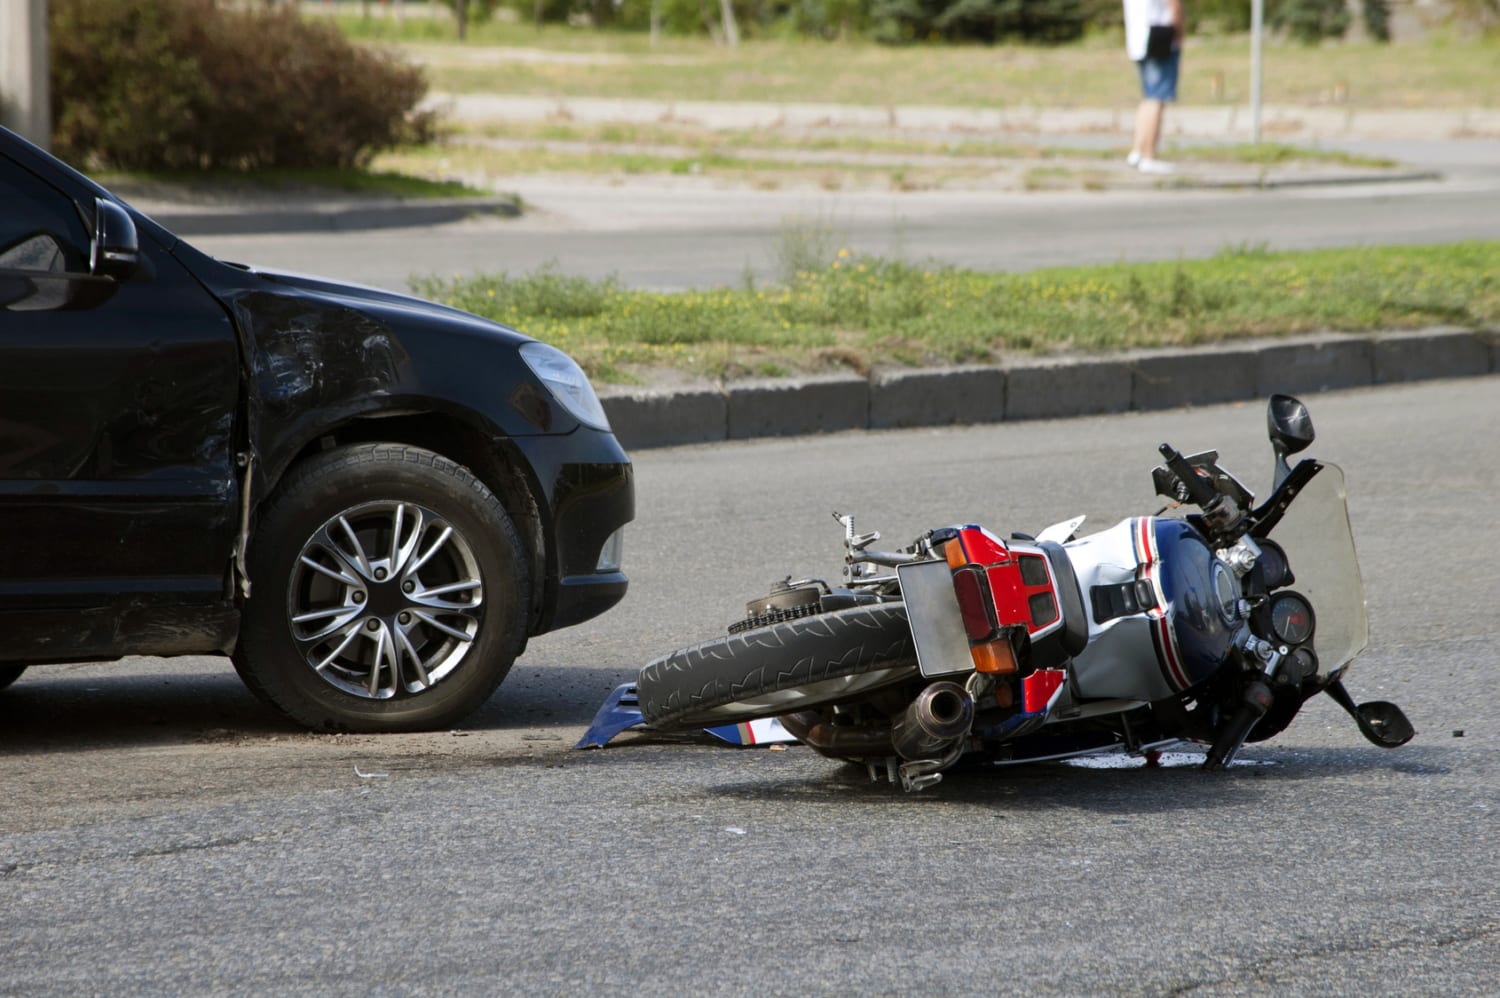 motorcycle crashes